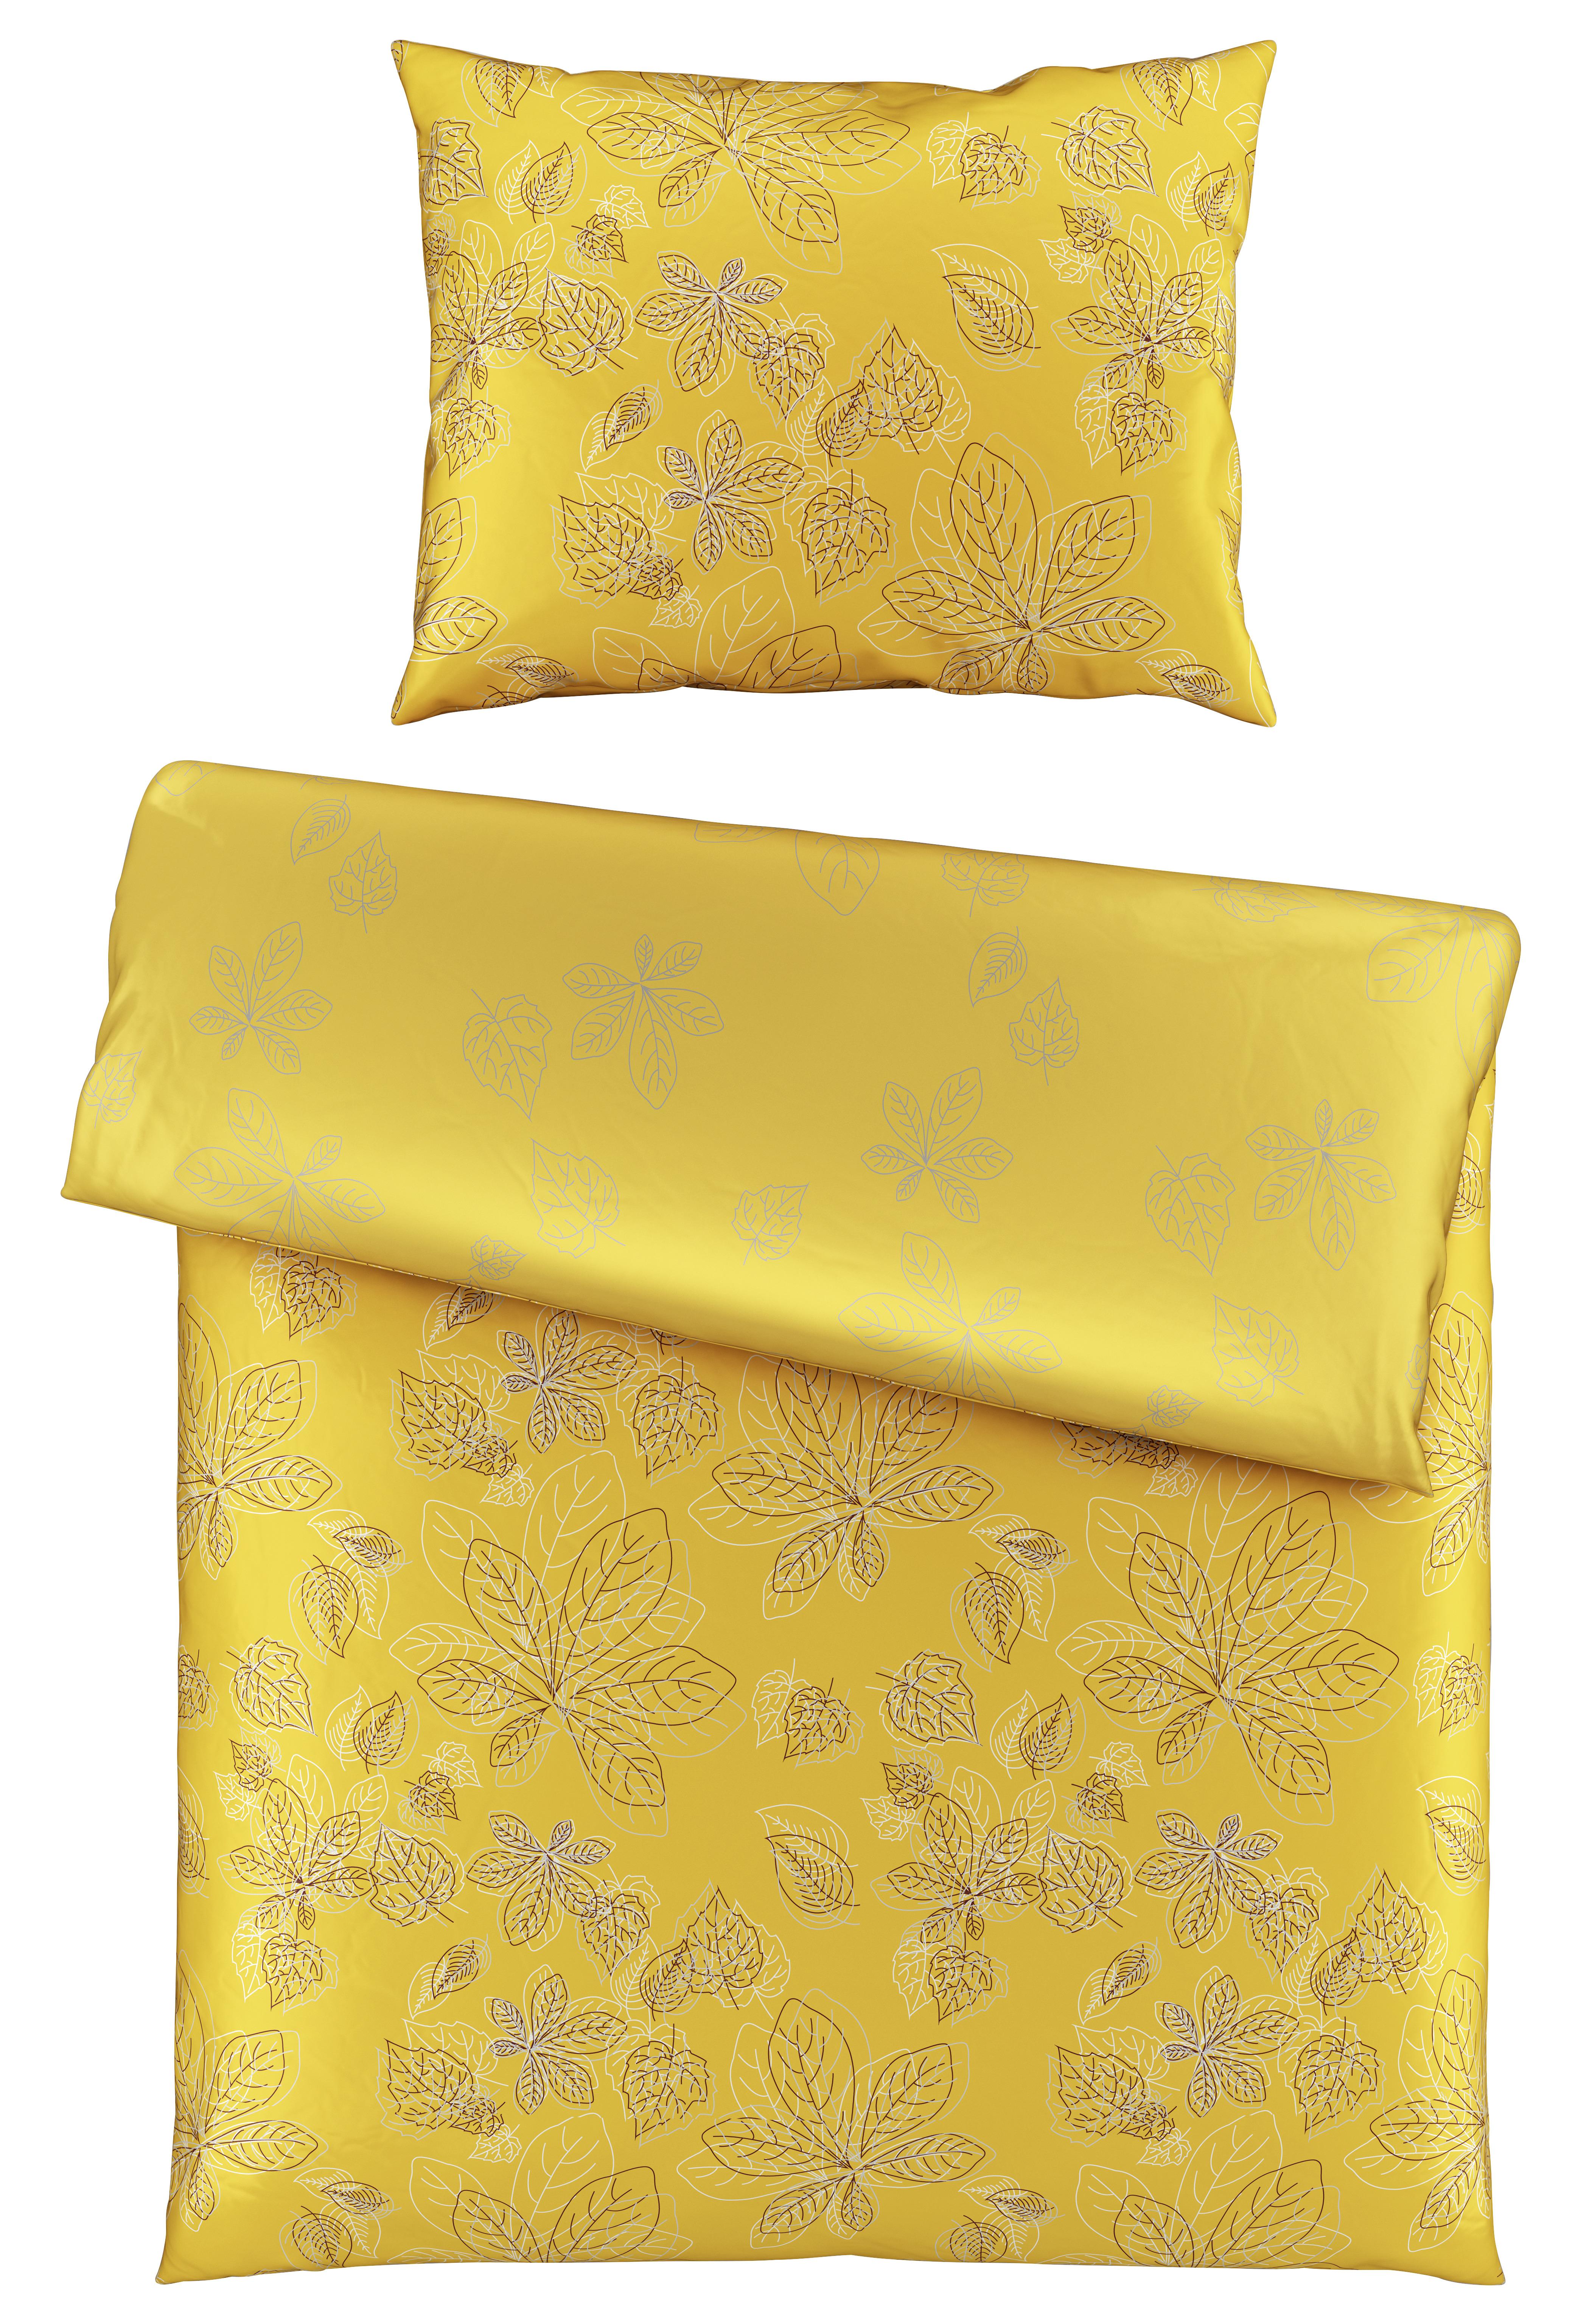 Saténová Posteľná Bielizeň Eden, 140/200cm, Žltá - žltá, Romantický / Vidiecky, textil (140/200cm) - Premium Living